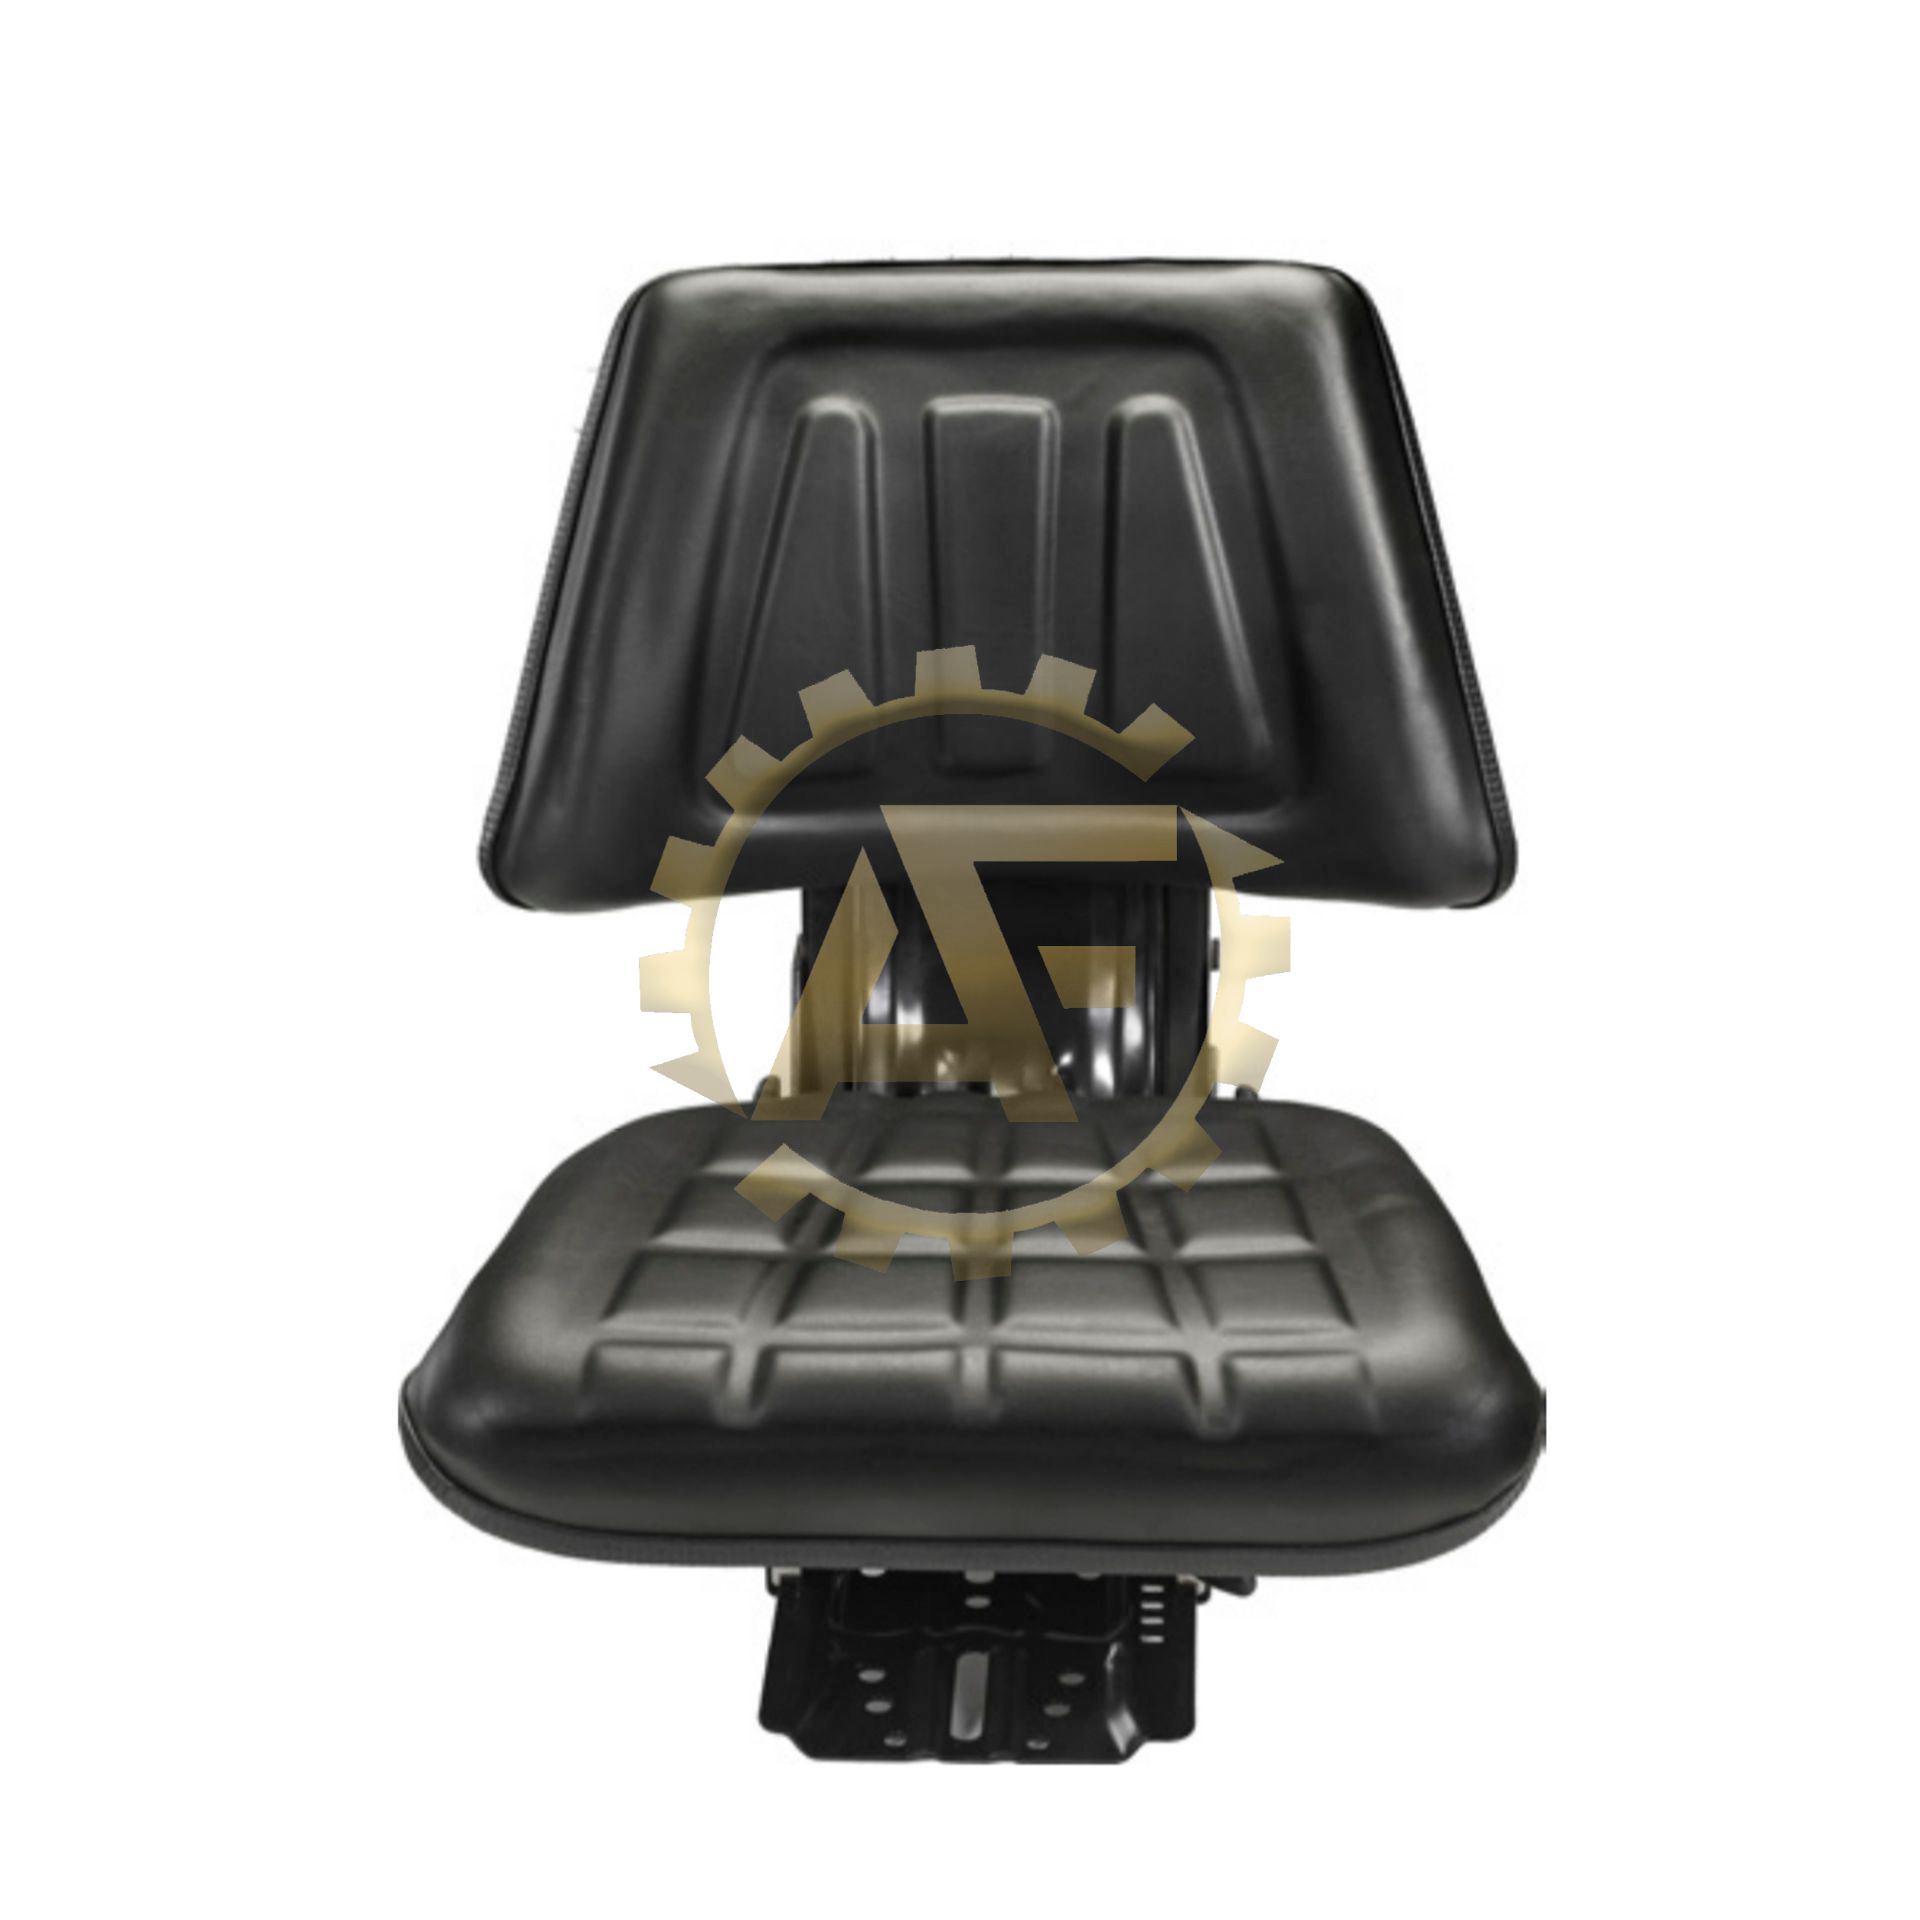 تصویر از صندلی بدون دسته تراکتور